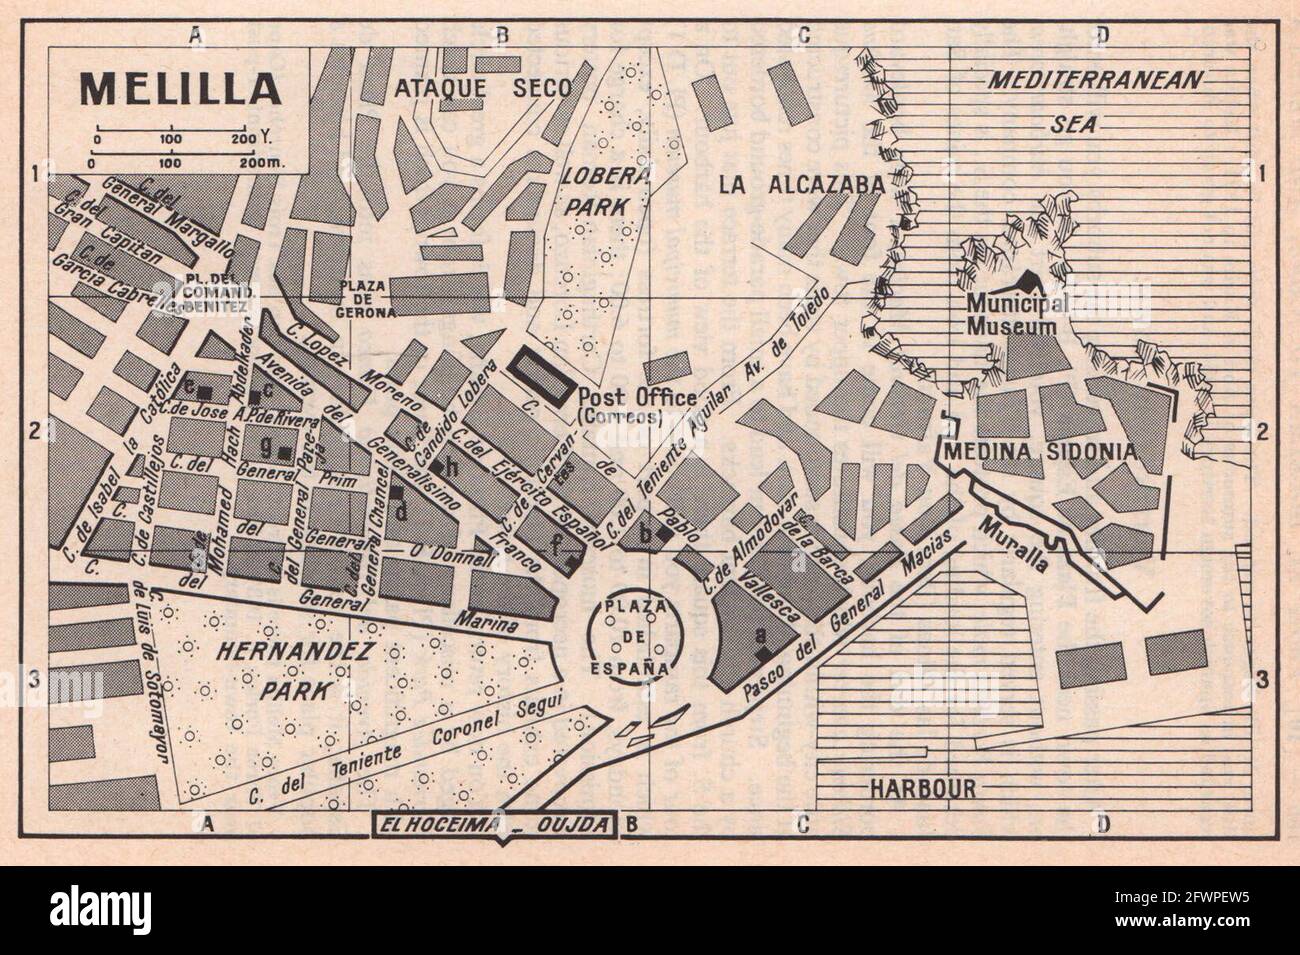 Melilla vintage Stadt Stadttouristenplan. Spanien / Marokko 1966 alte Jahrgangskarte Stockfoto